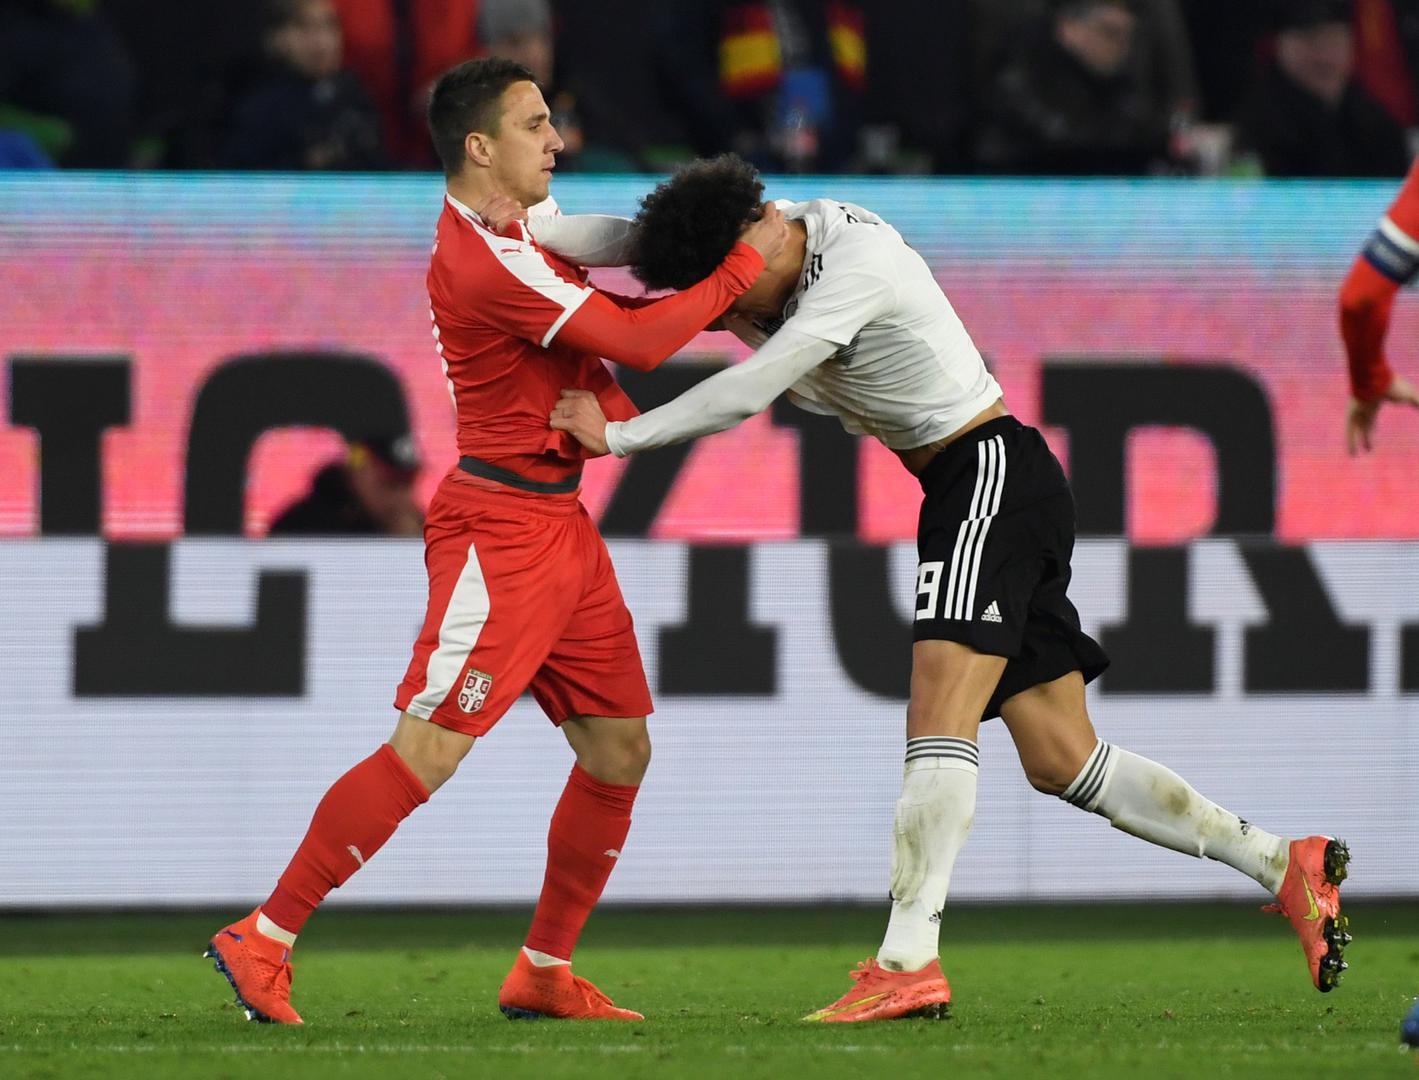 Srbi su sinoć u prijateljskoj utakmici uspjeli u Wolfsburgu izboriti remi 1:1 protiv Njemačke

